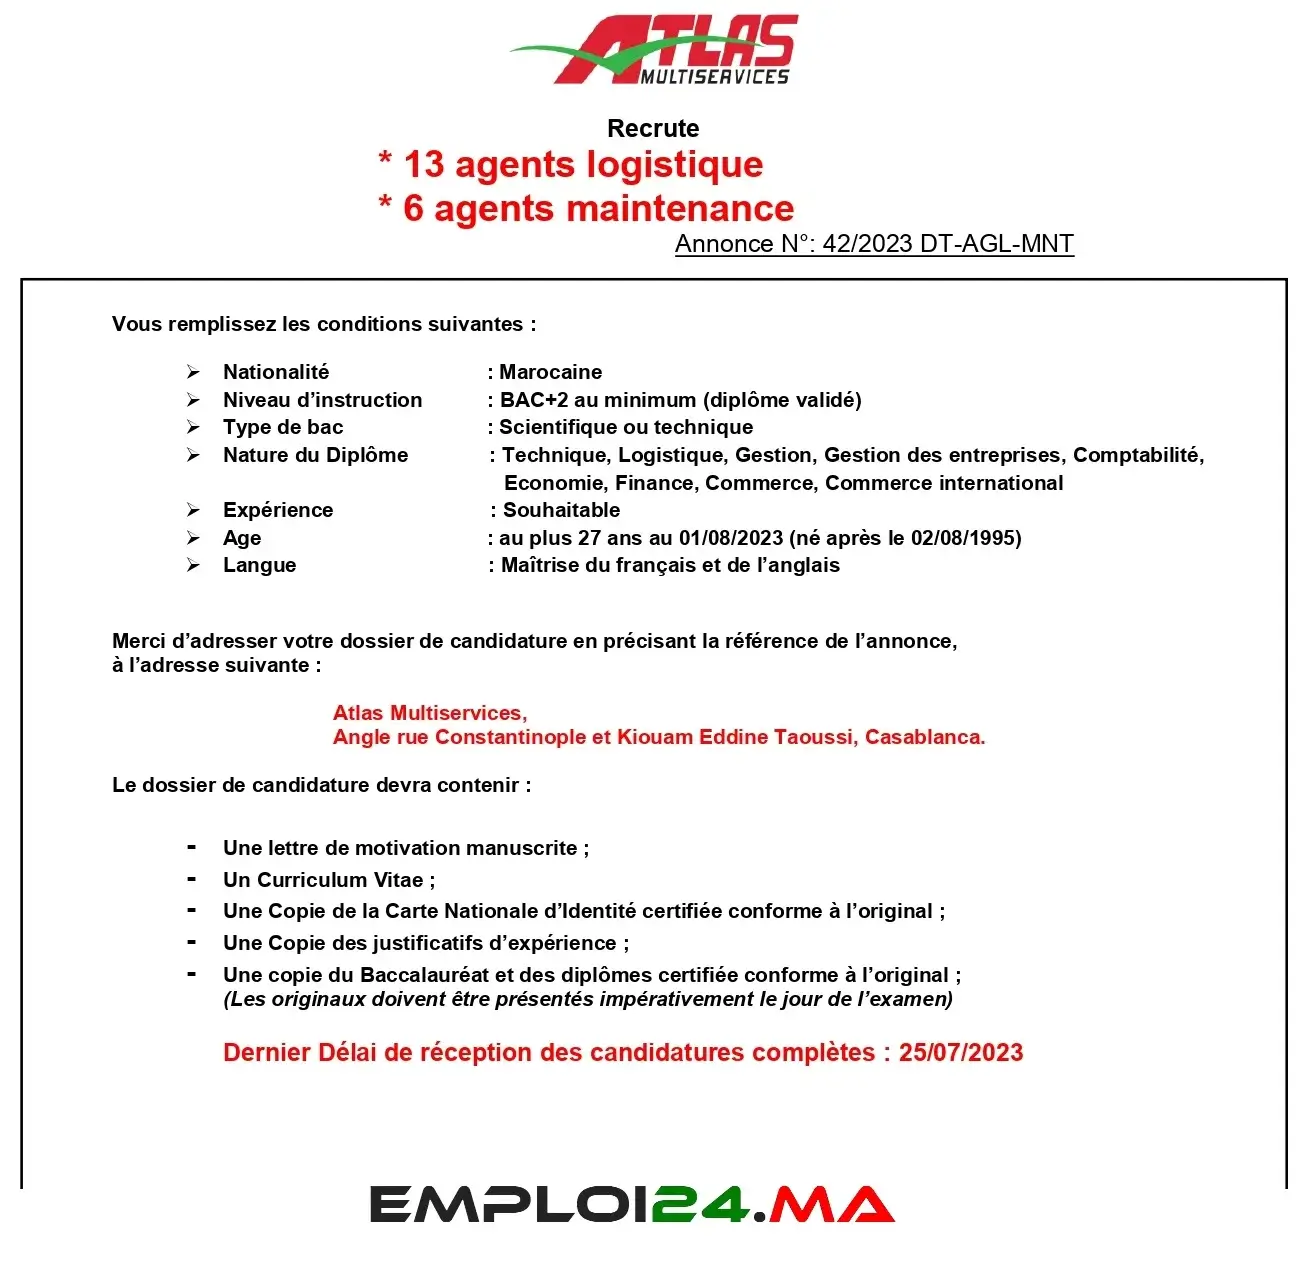 Atlas Multiservices des Agents Maintenance et Logistique